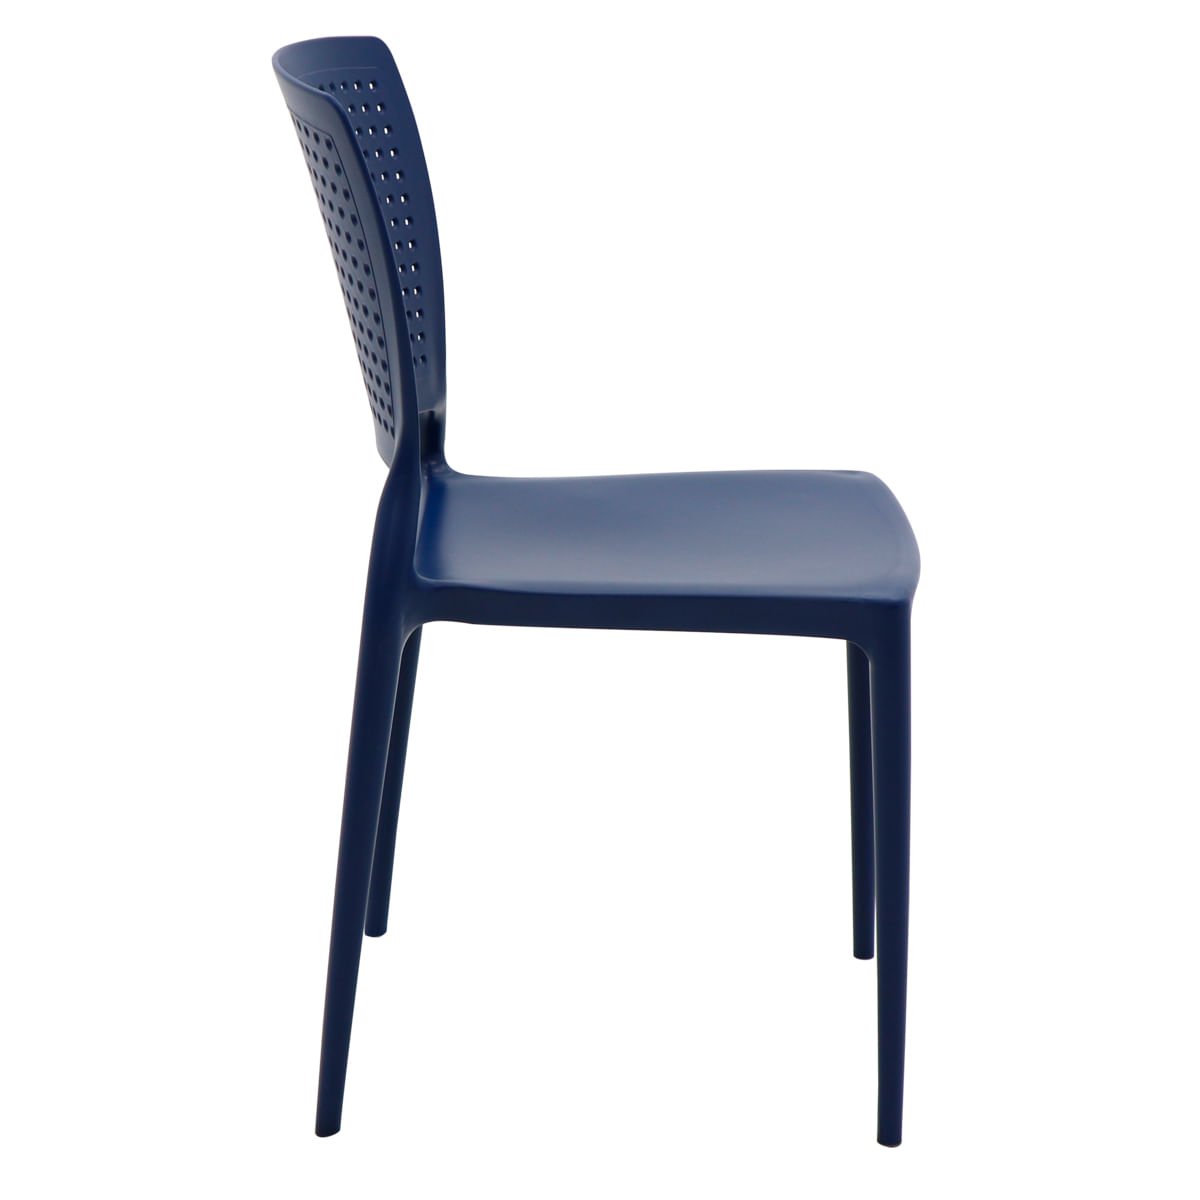 Cadeira Tramontina Safira Summa em Polipropileno e Fibra de Vidro Azul Yale - 4